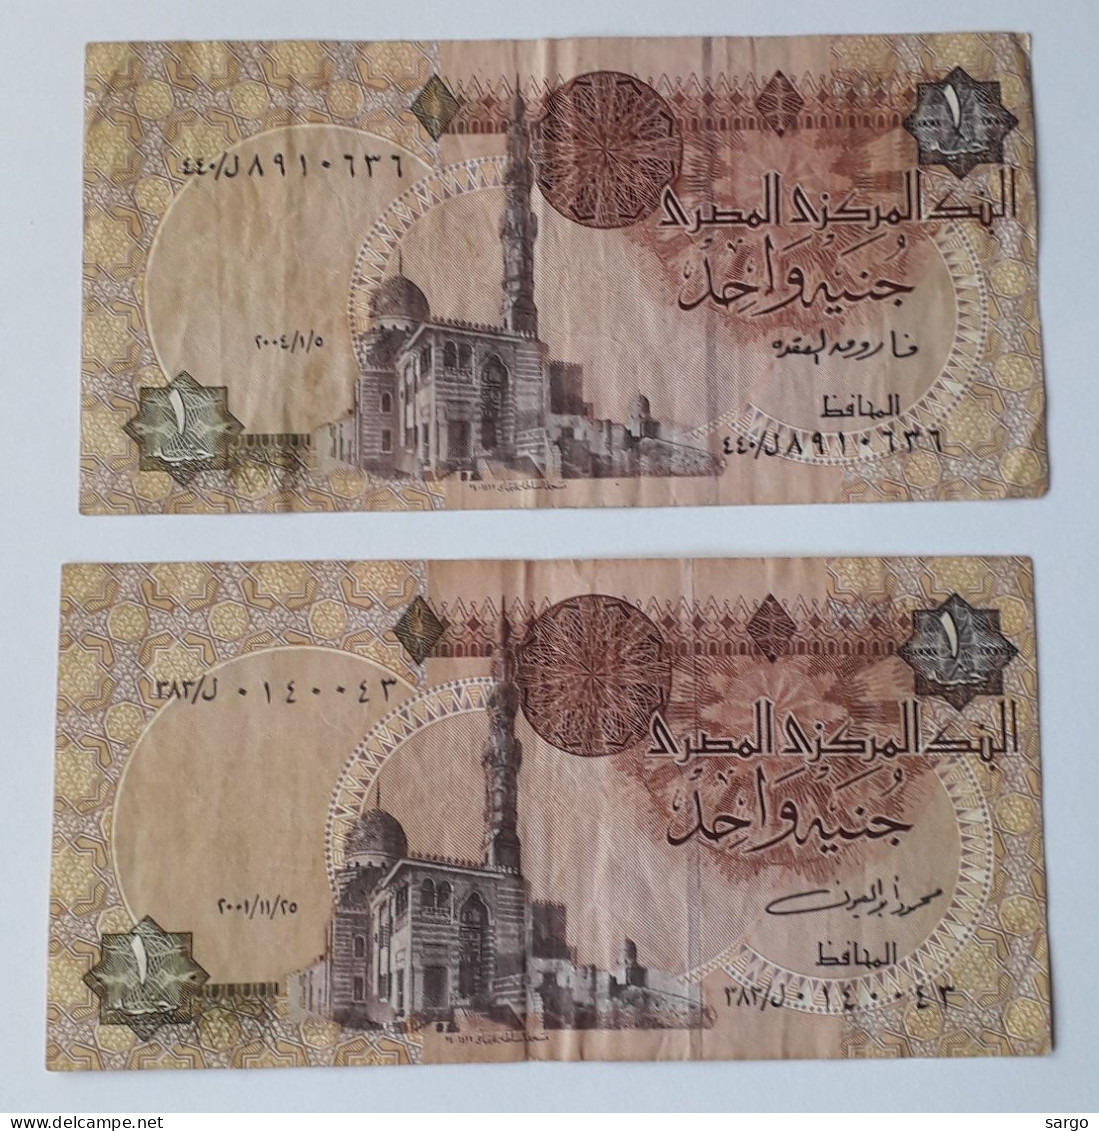 EGYPT - 1 + 1 POUND -  P 50 - 1978-2008 -  CIRC - 2 PCS - BANKNOTES - PAPER MONEY - CARTAMONETA - - Egypte